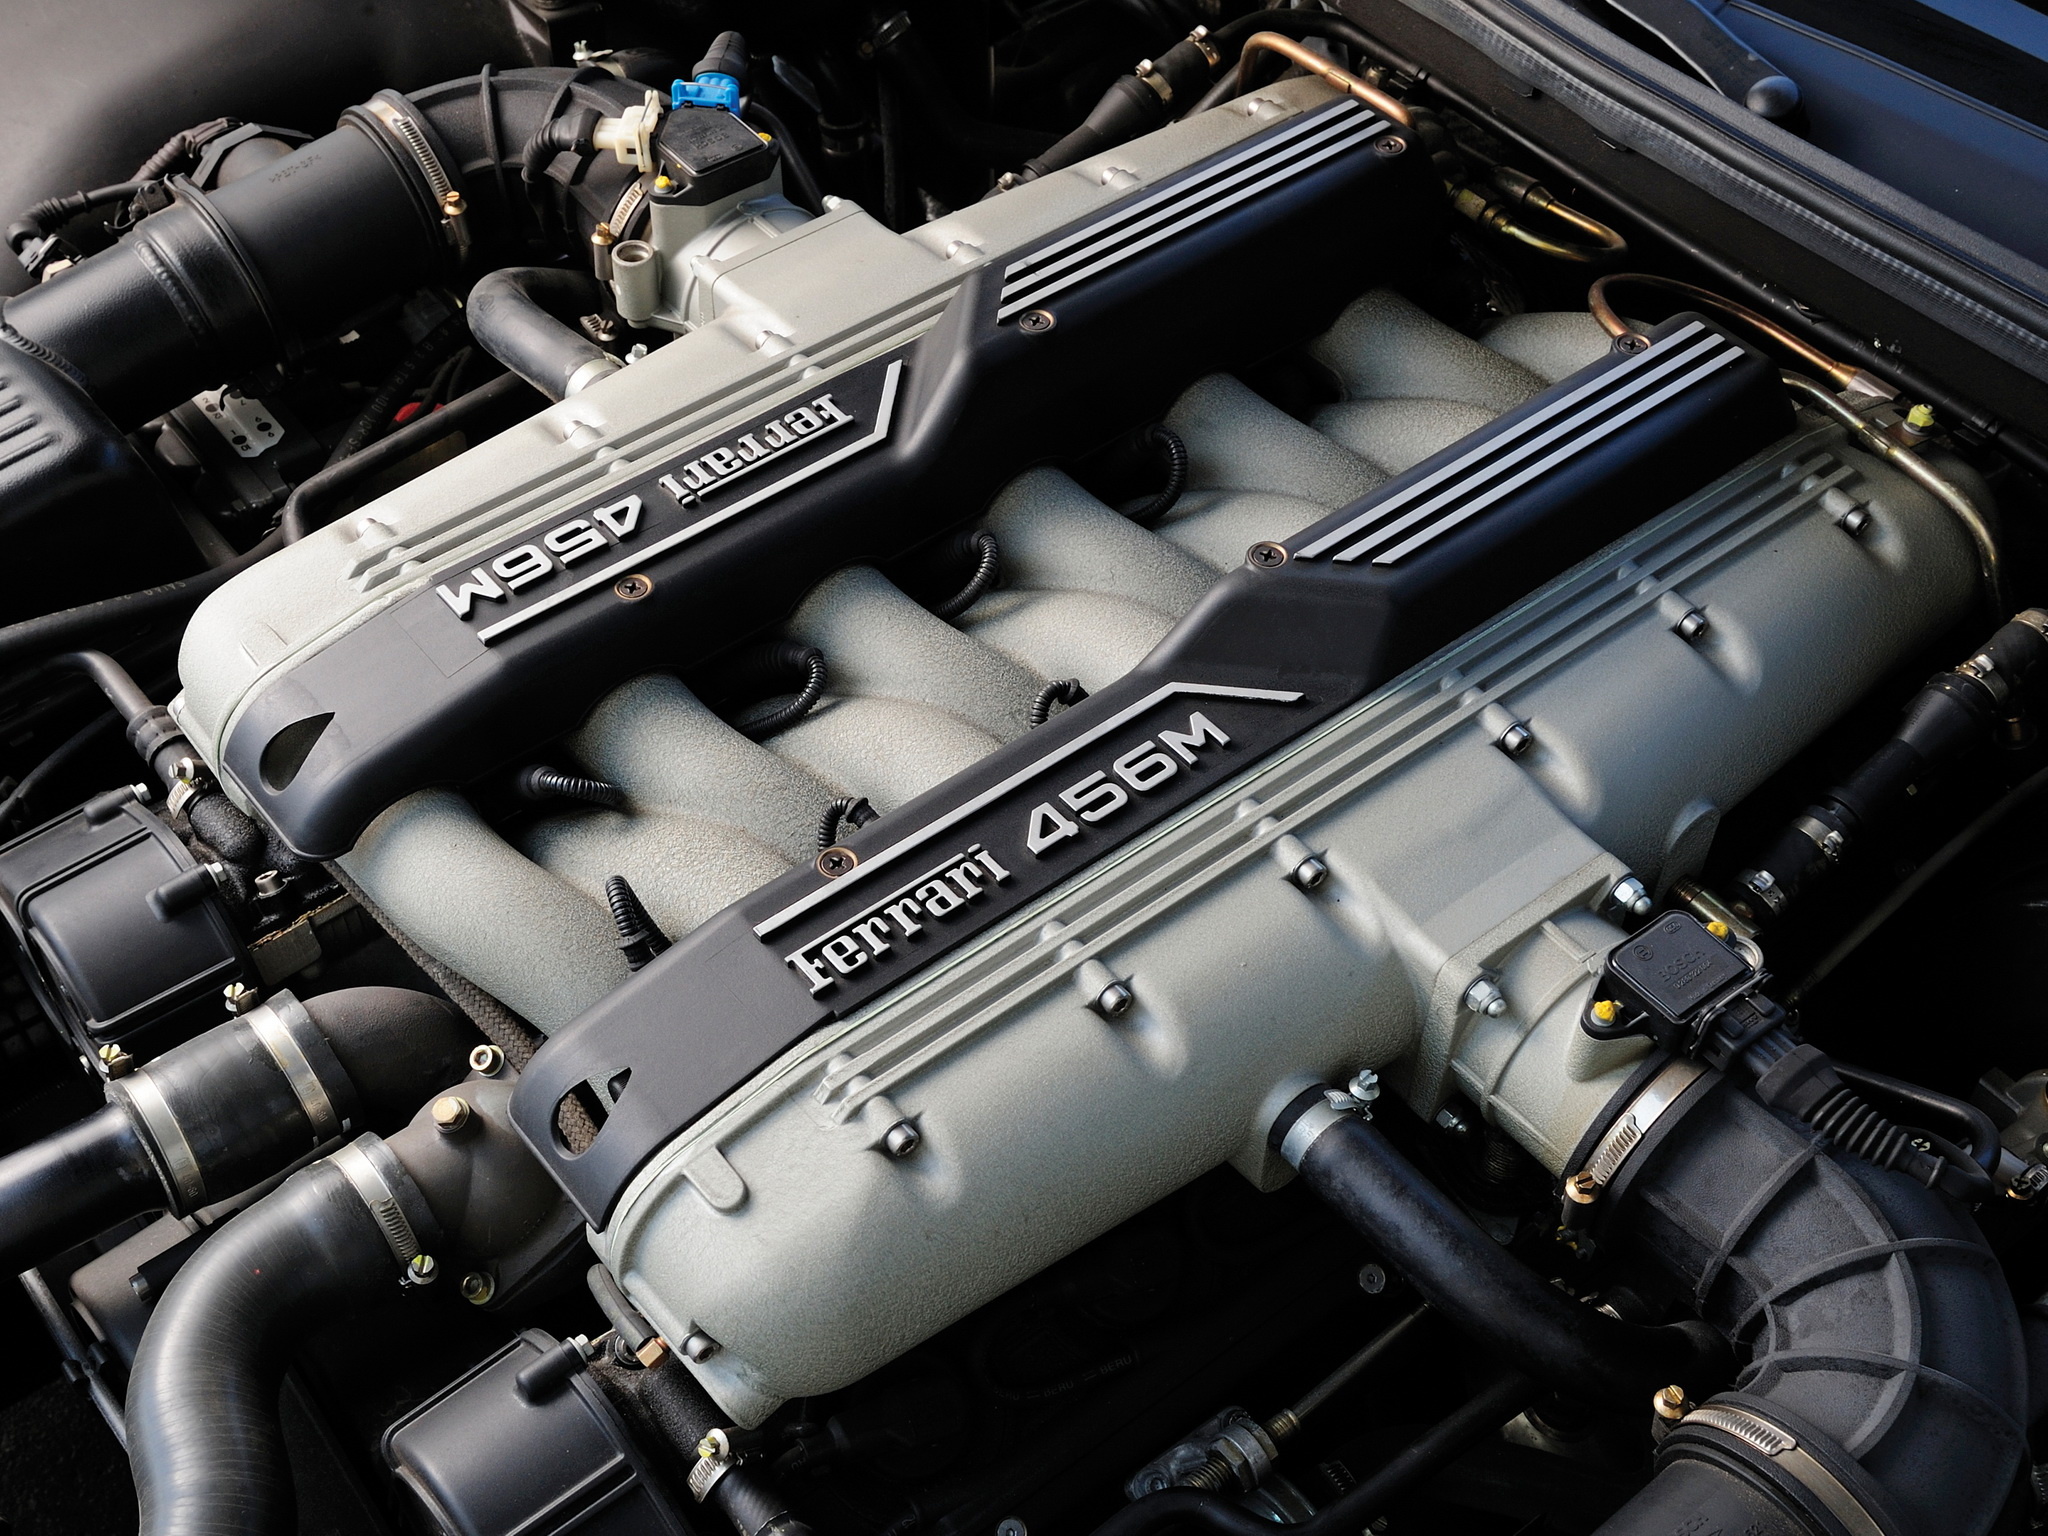 法拉利v12发动机车型图片